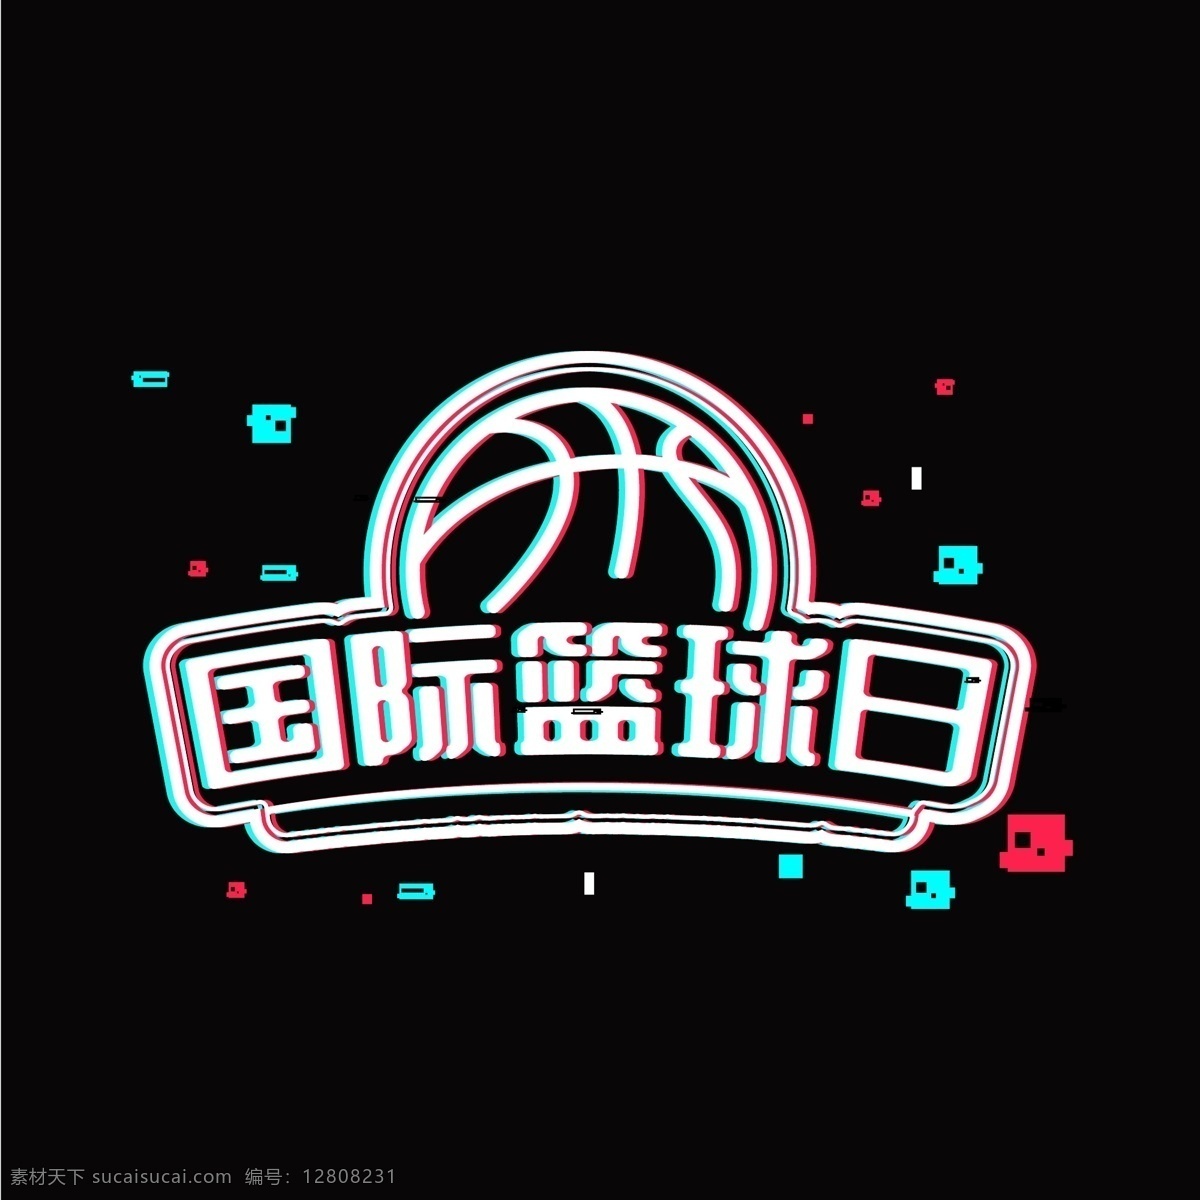 国际 篮球 日 抖 音 故障 风格 字体 矢量 渐变 广告 字体设计 立体 彩色 打篮球 海报 艺术字 设计素材 篮球比赛 抖音 故障风 国际化